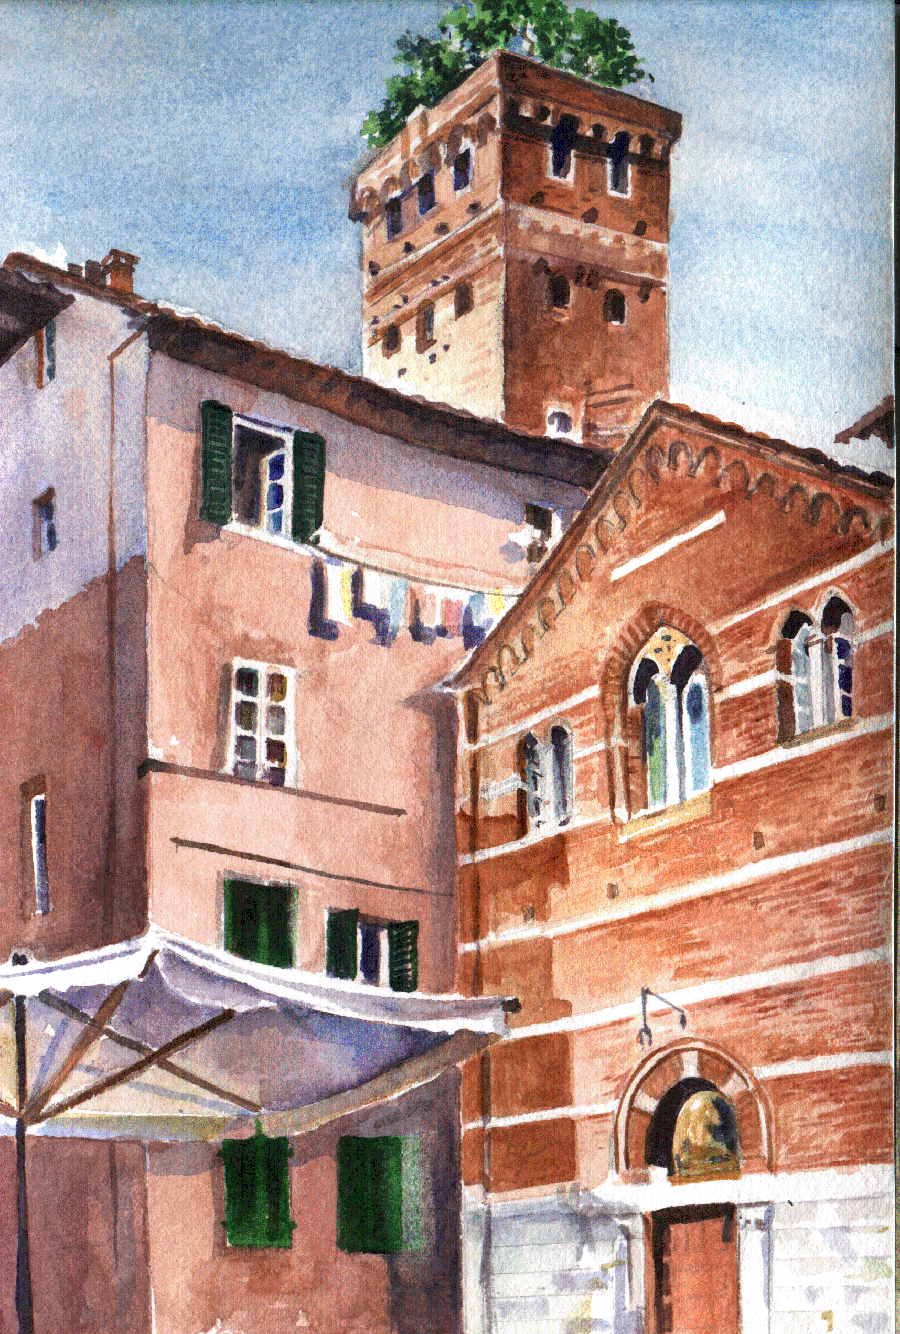 Lucca guigo tower